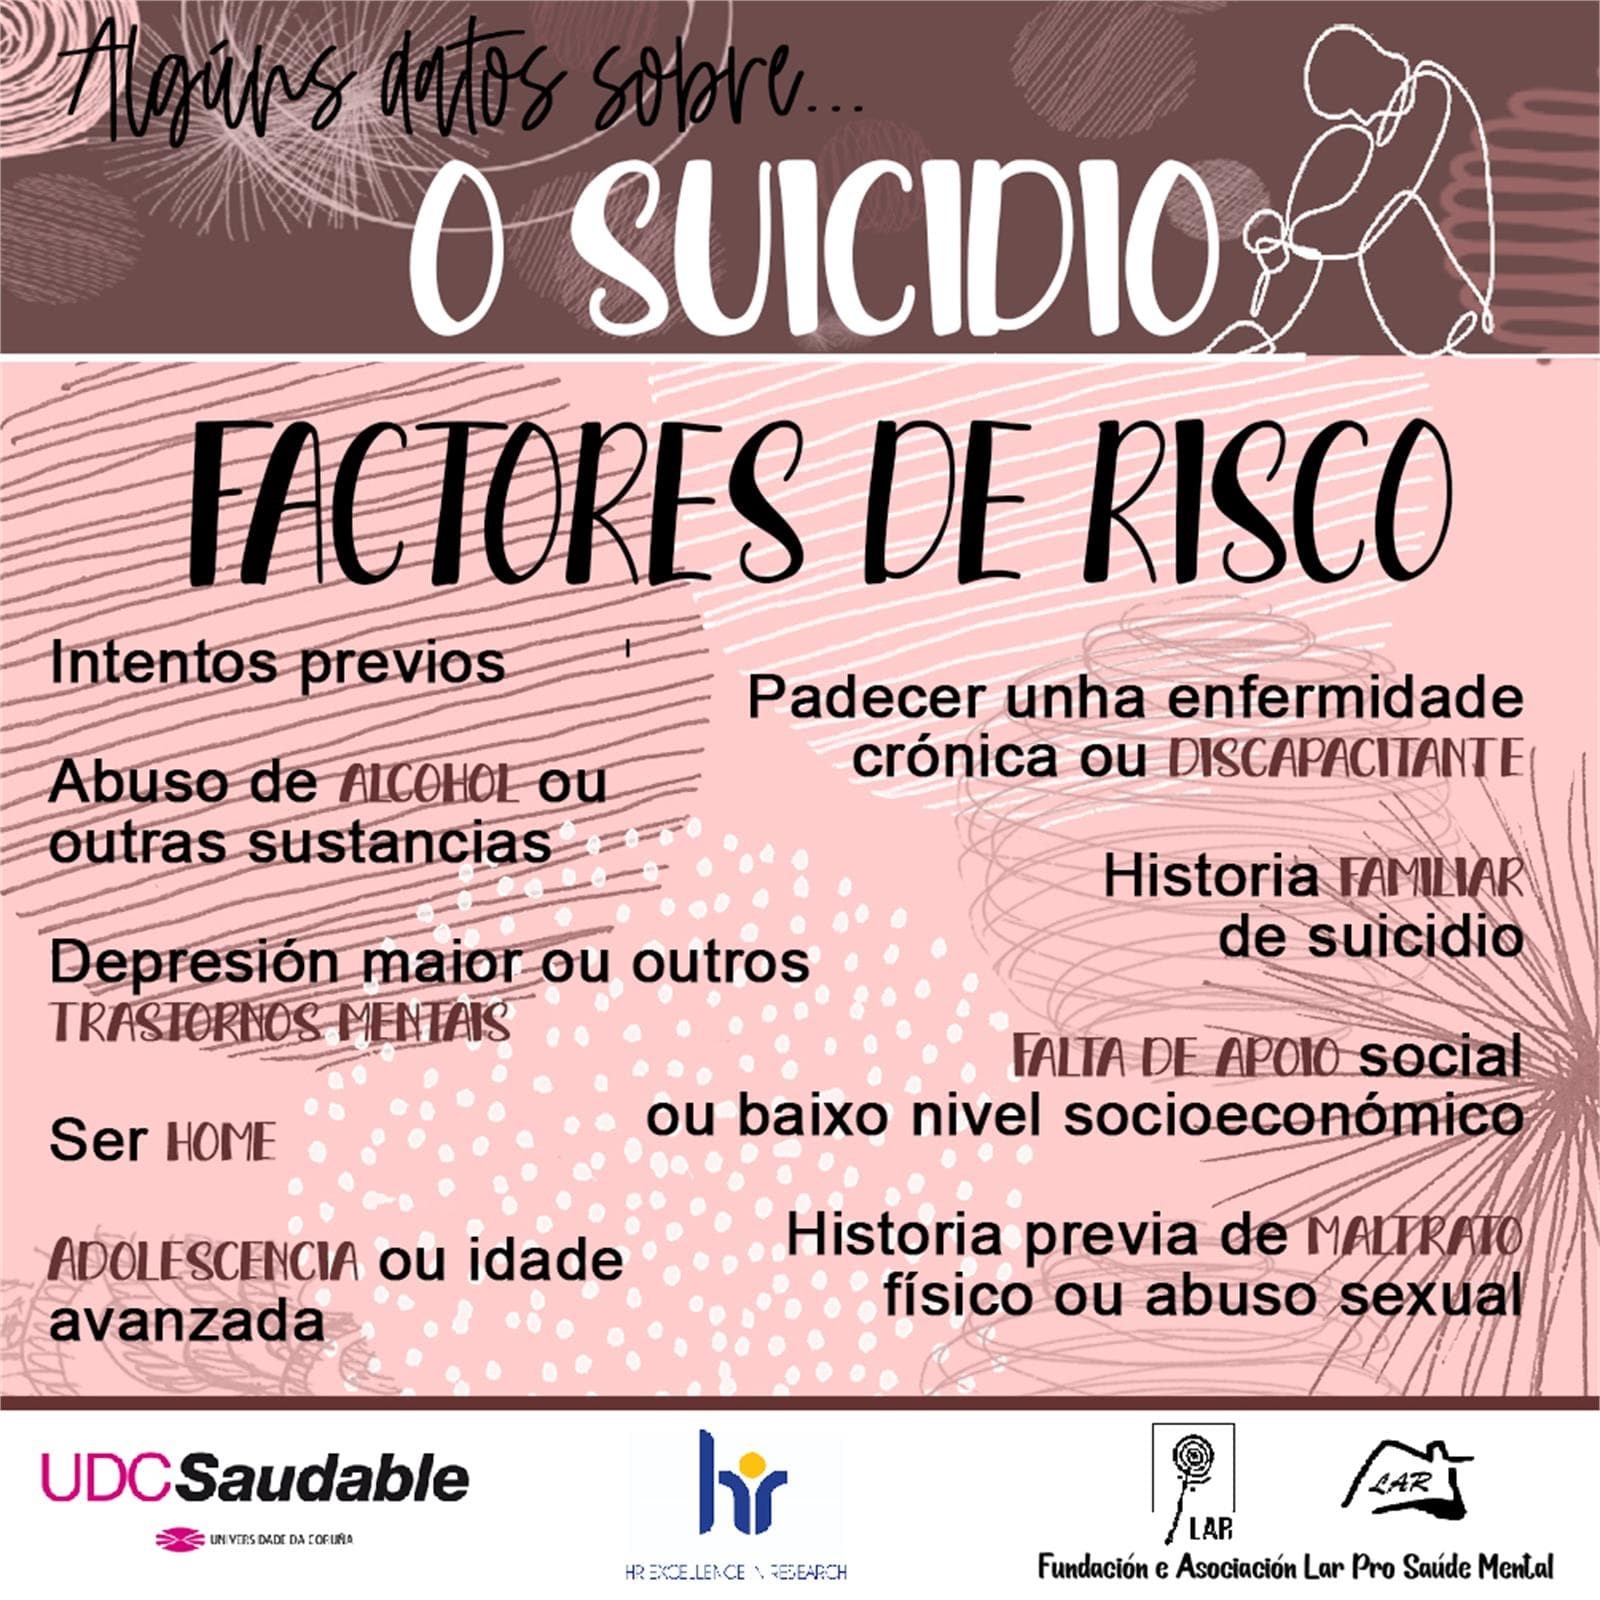 Algunos Datos sobre Suicidio... - LAR Pro Salud Mental - Imagen 7